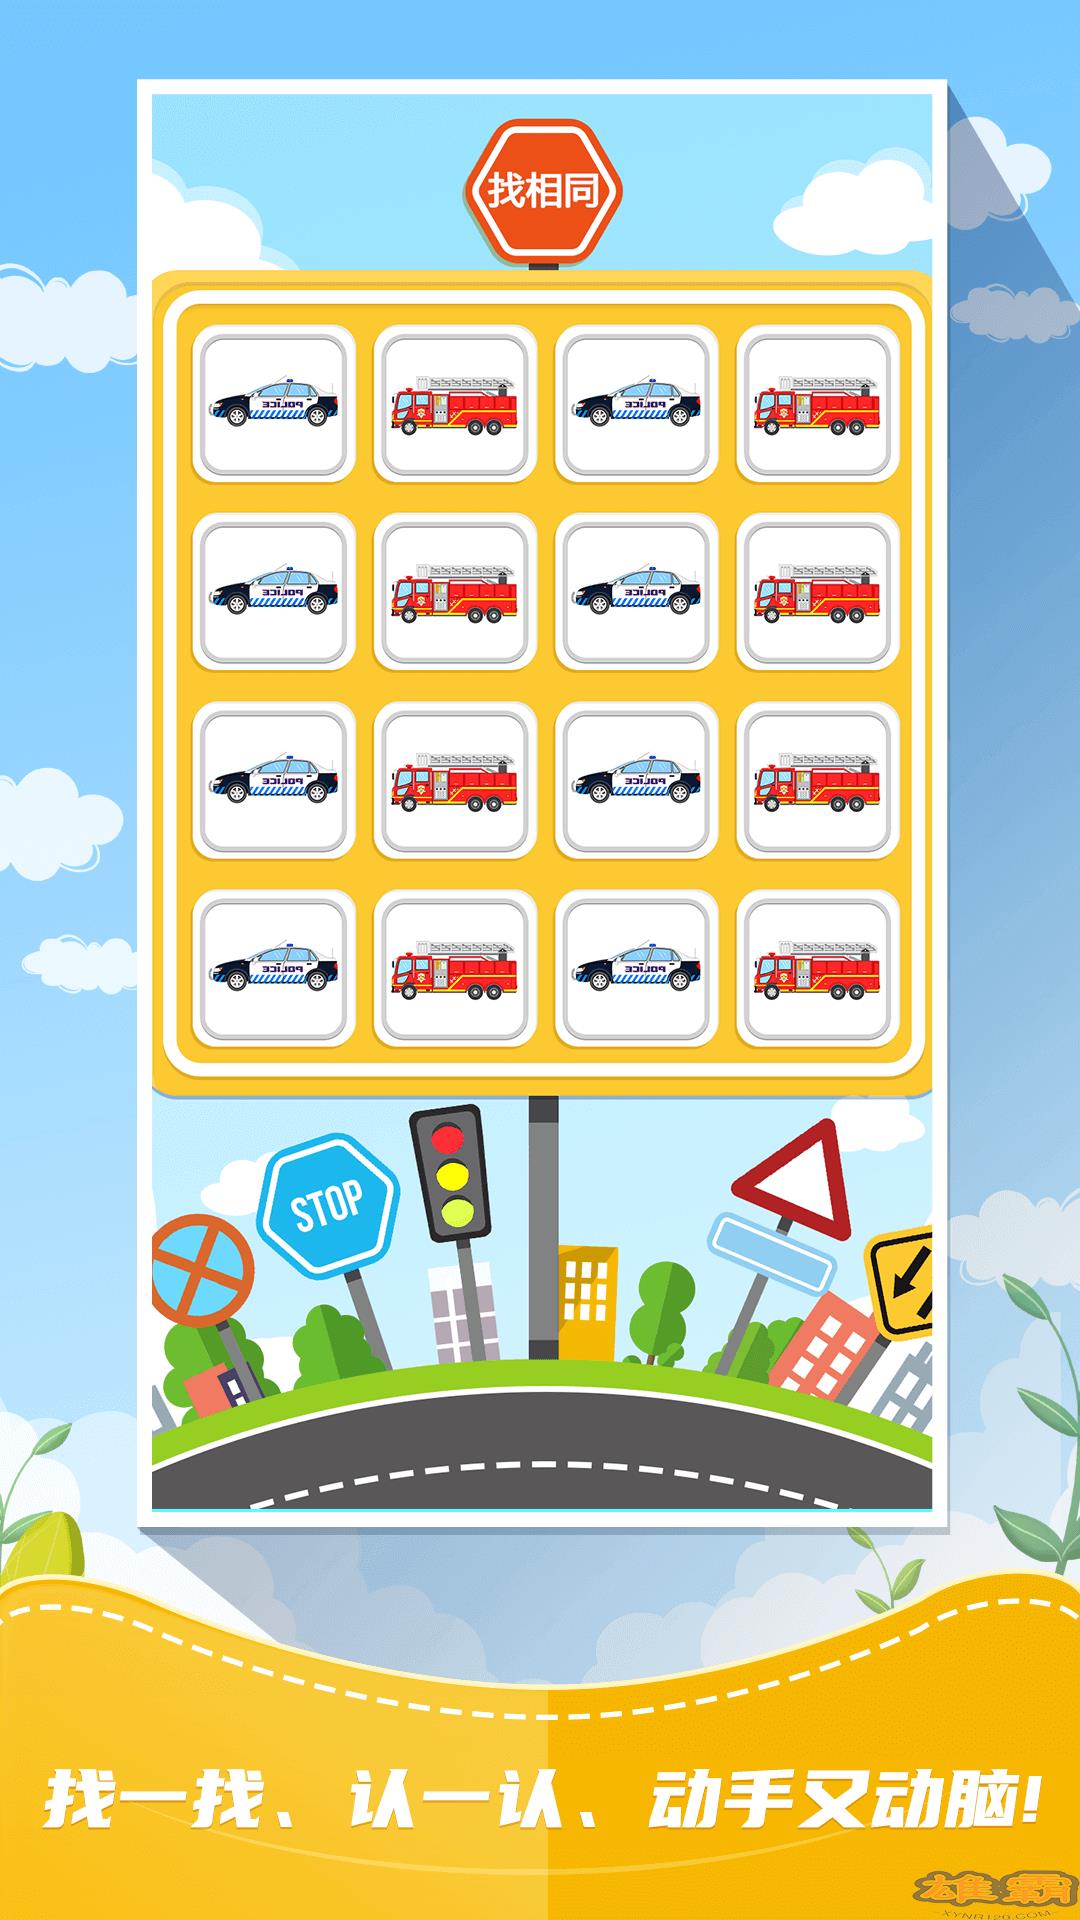 Trò chơi trẻ em tìm hiểu về giao thông